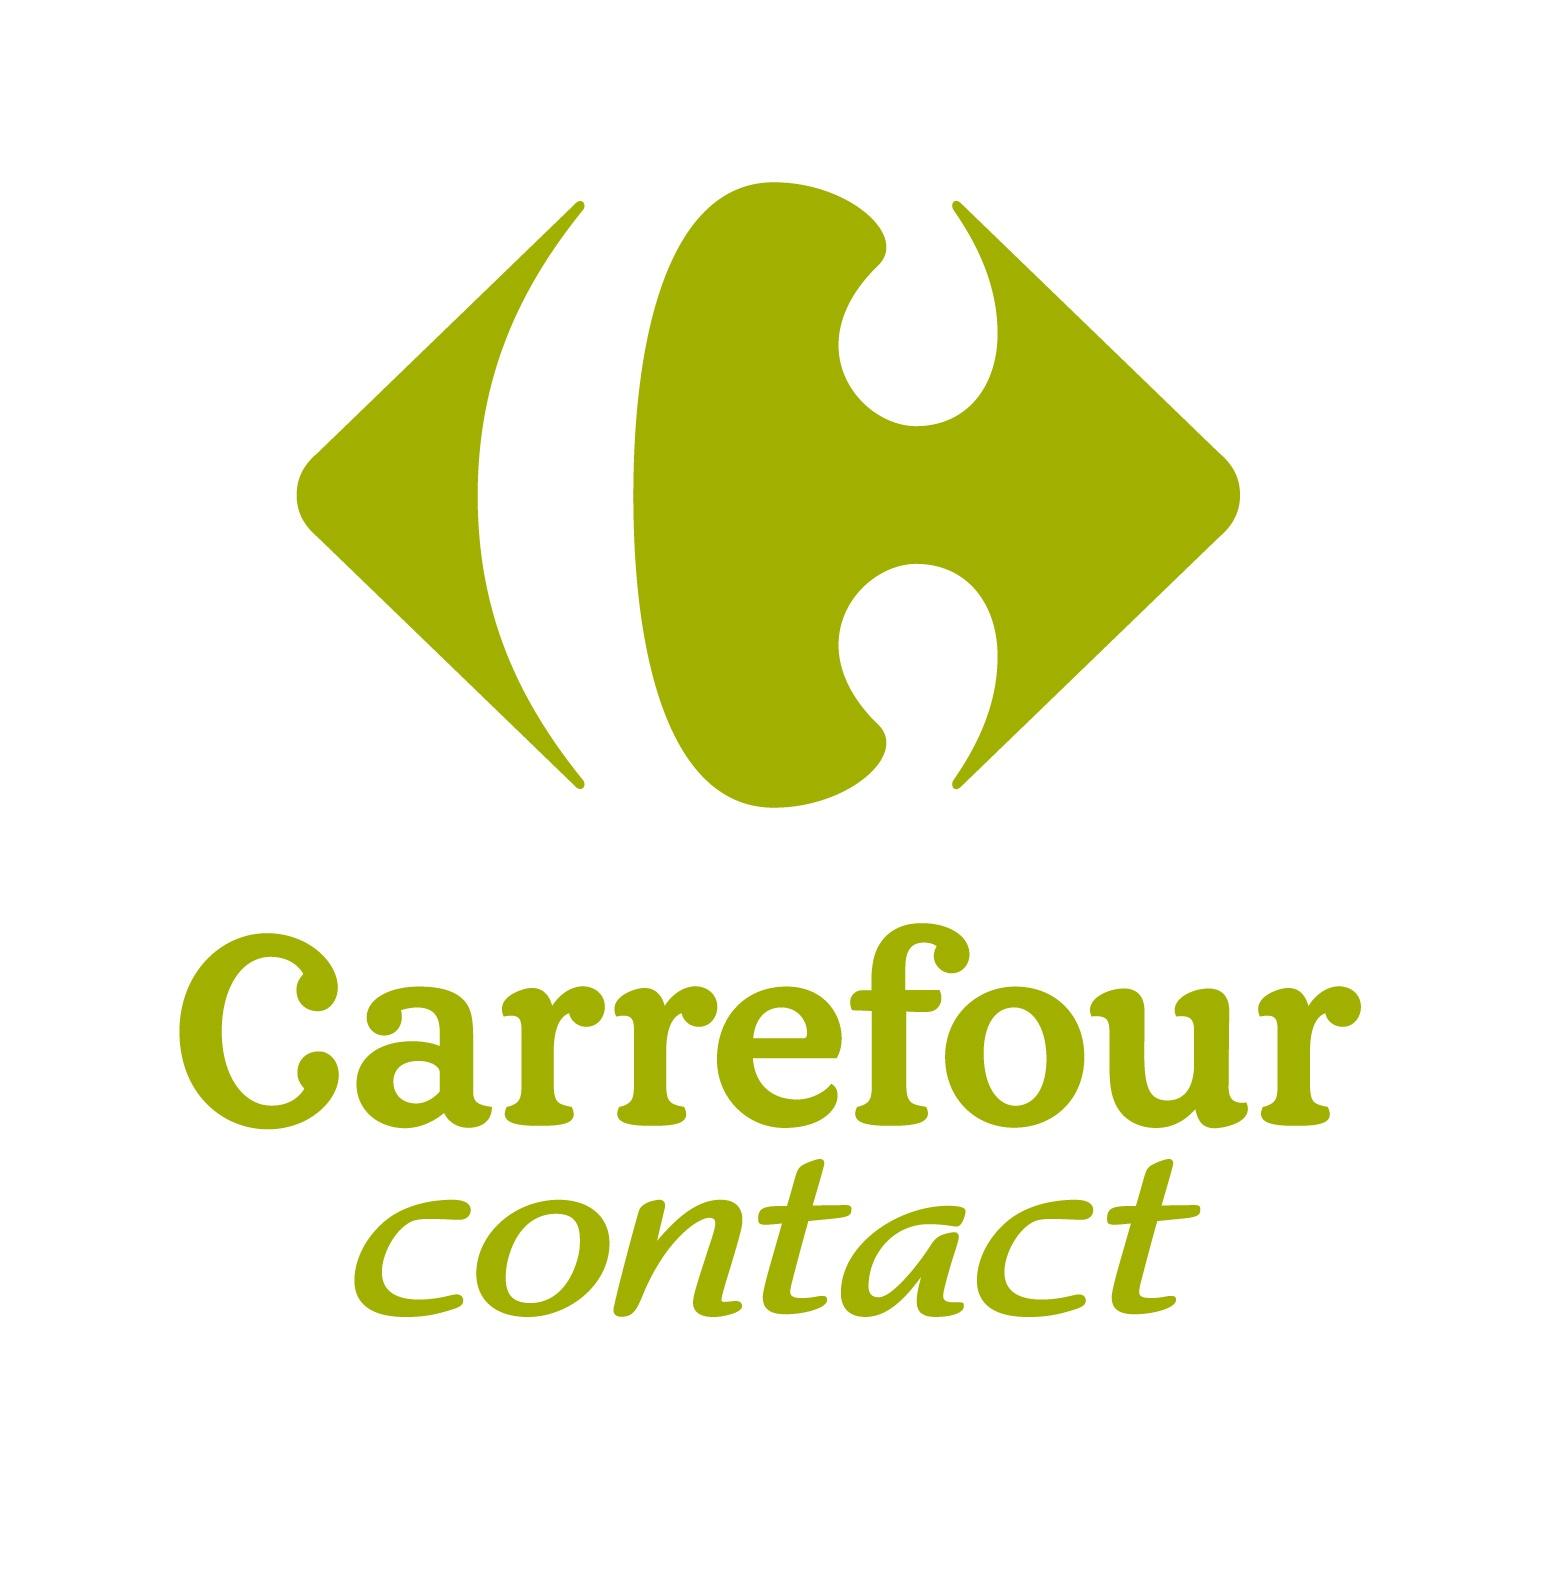 Carrefour Contact Aubenas